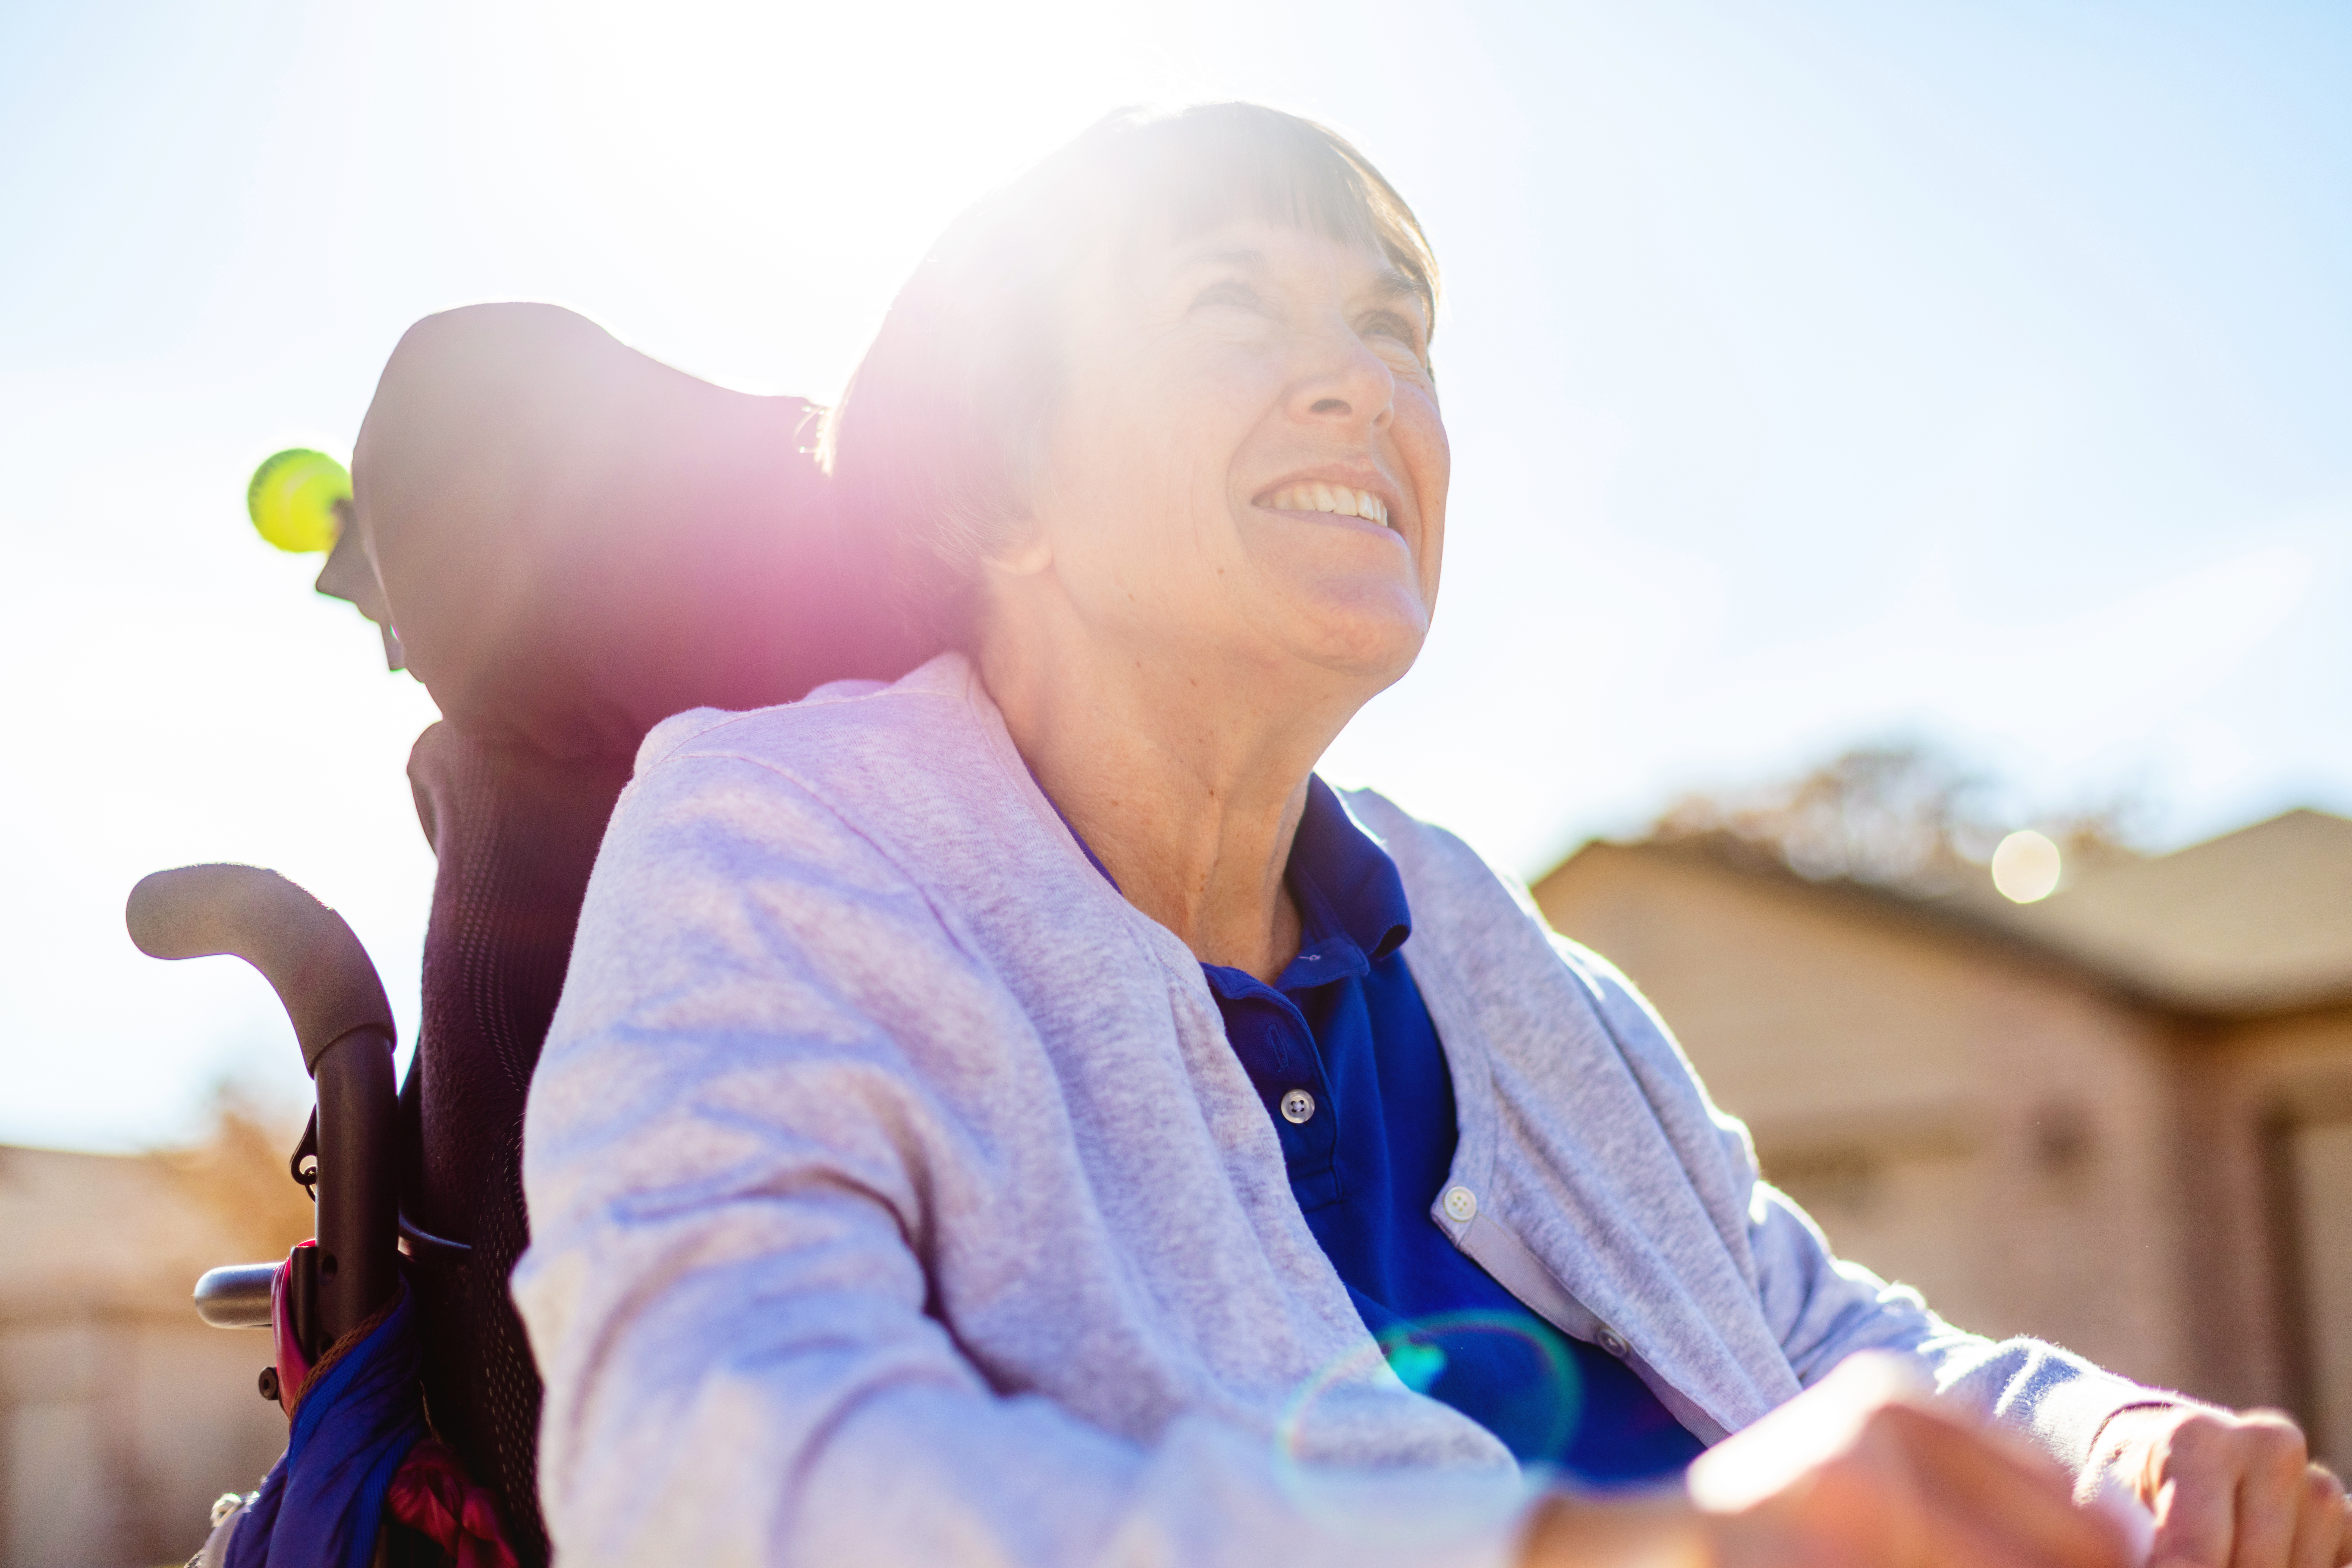 Con el seguimiento y los controles de profesionales, los pacientes con esclerosis múltiple pueden tener una buena calidad de vida